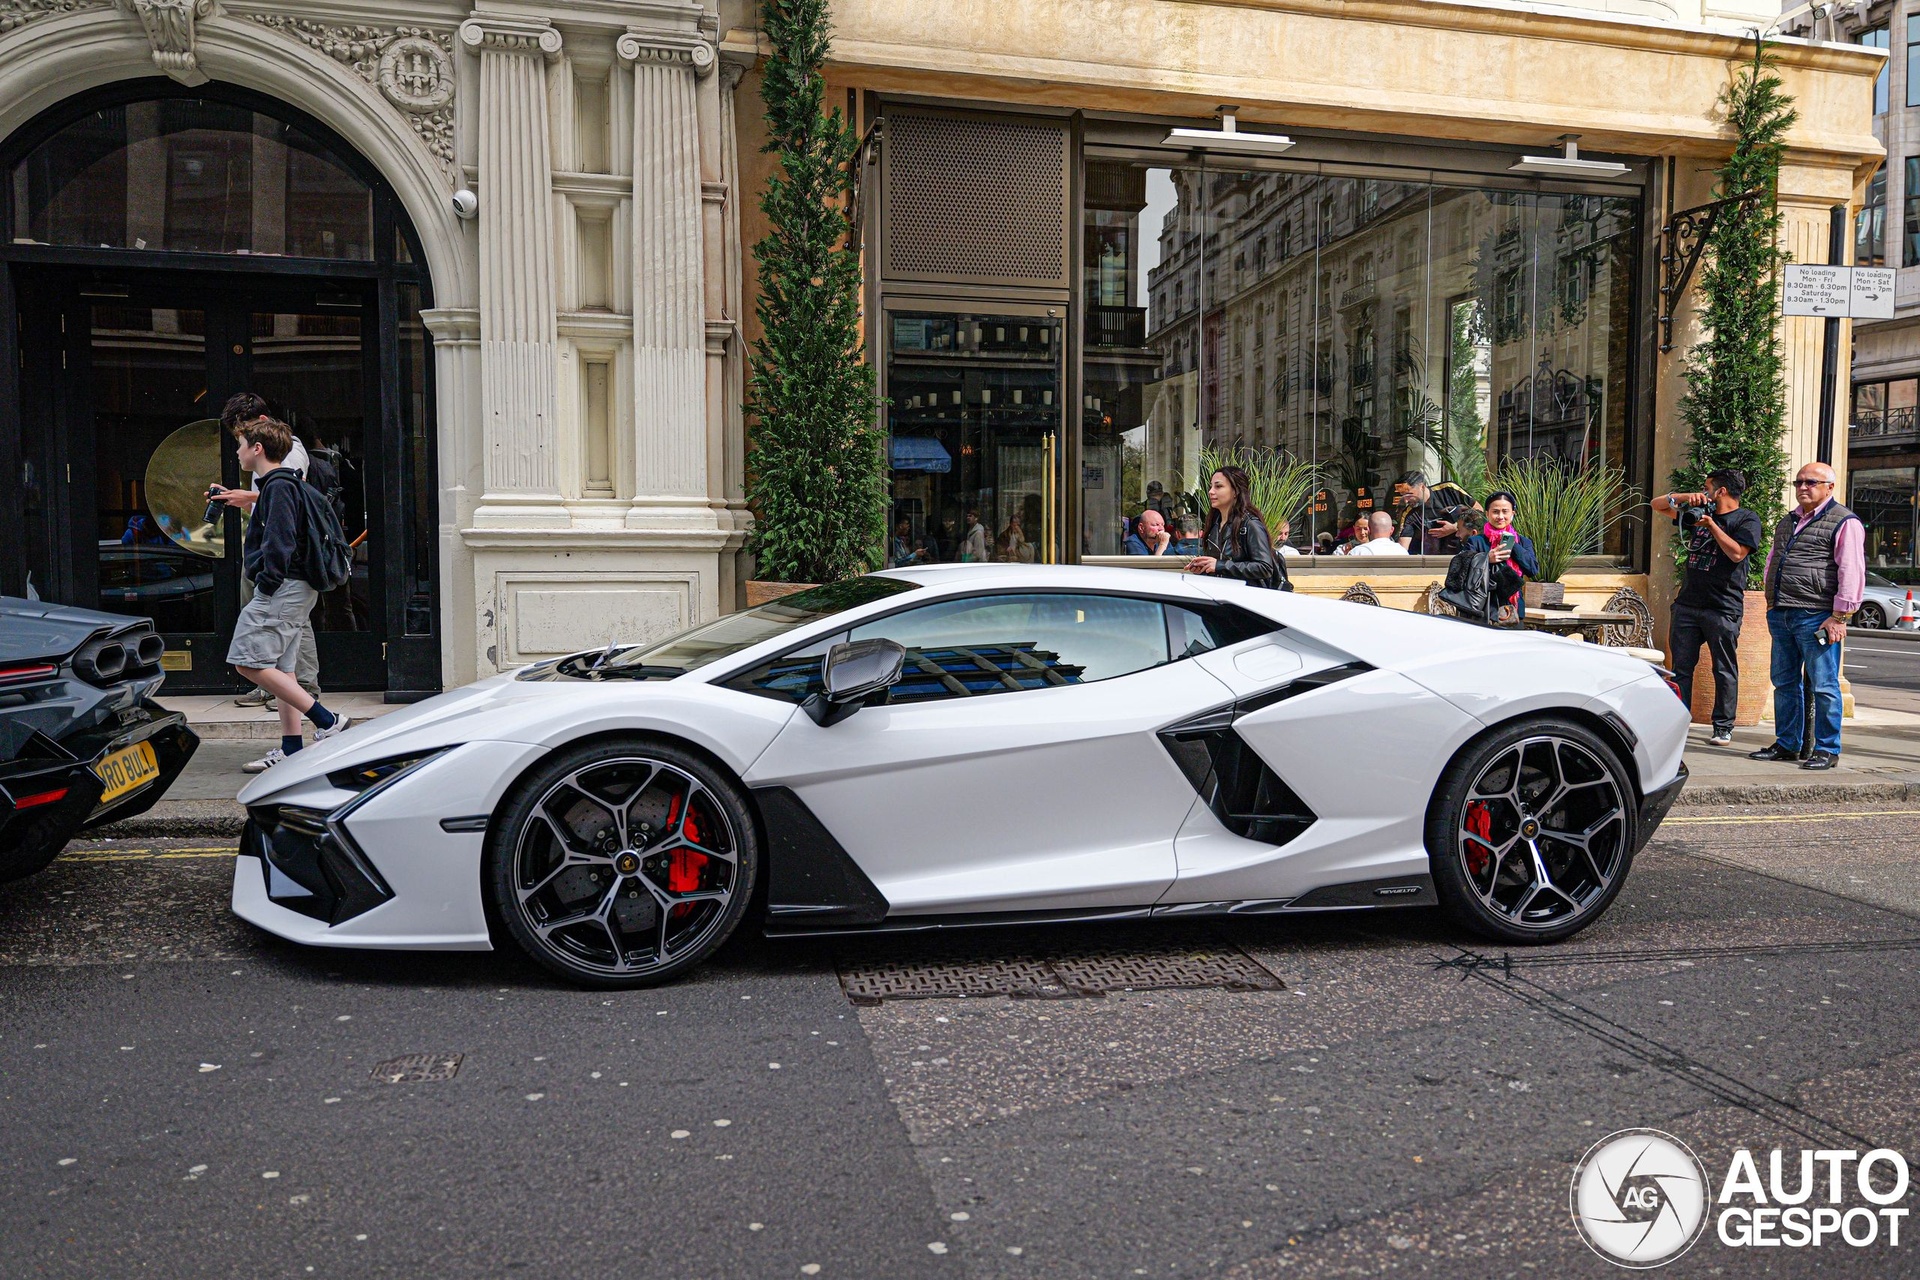 4 siêu xe Lamborghini Revuelto cùng xuất hiện tại London